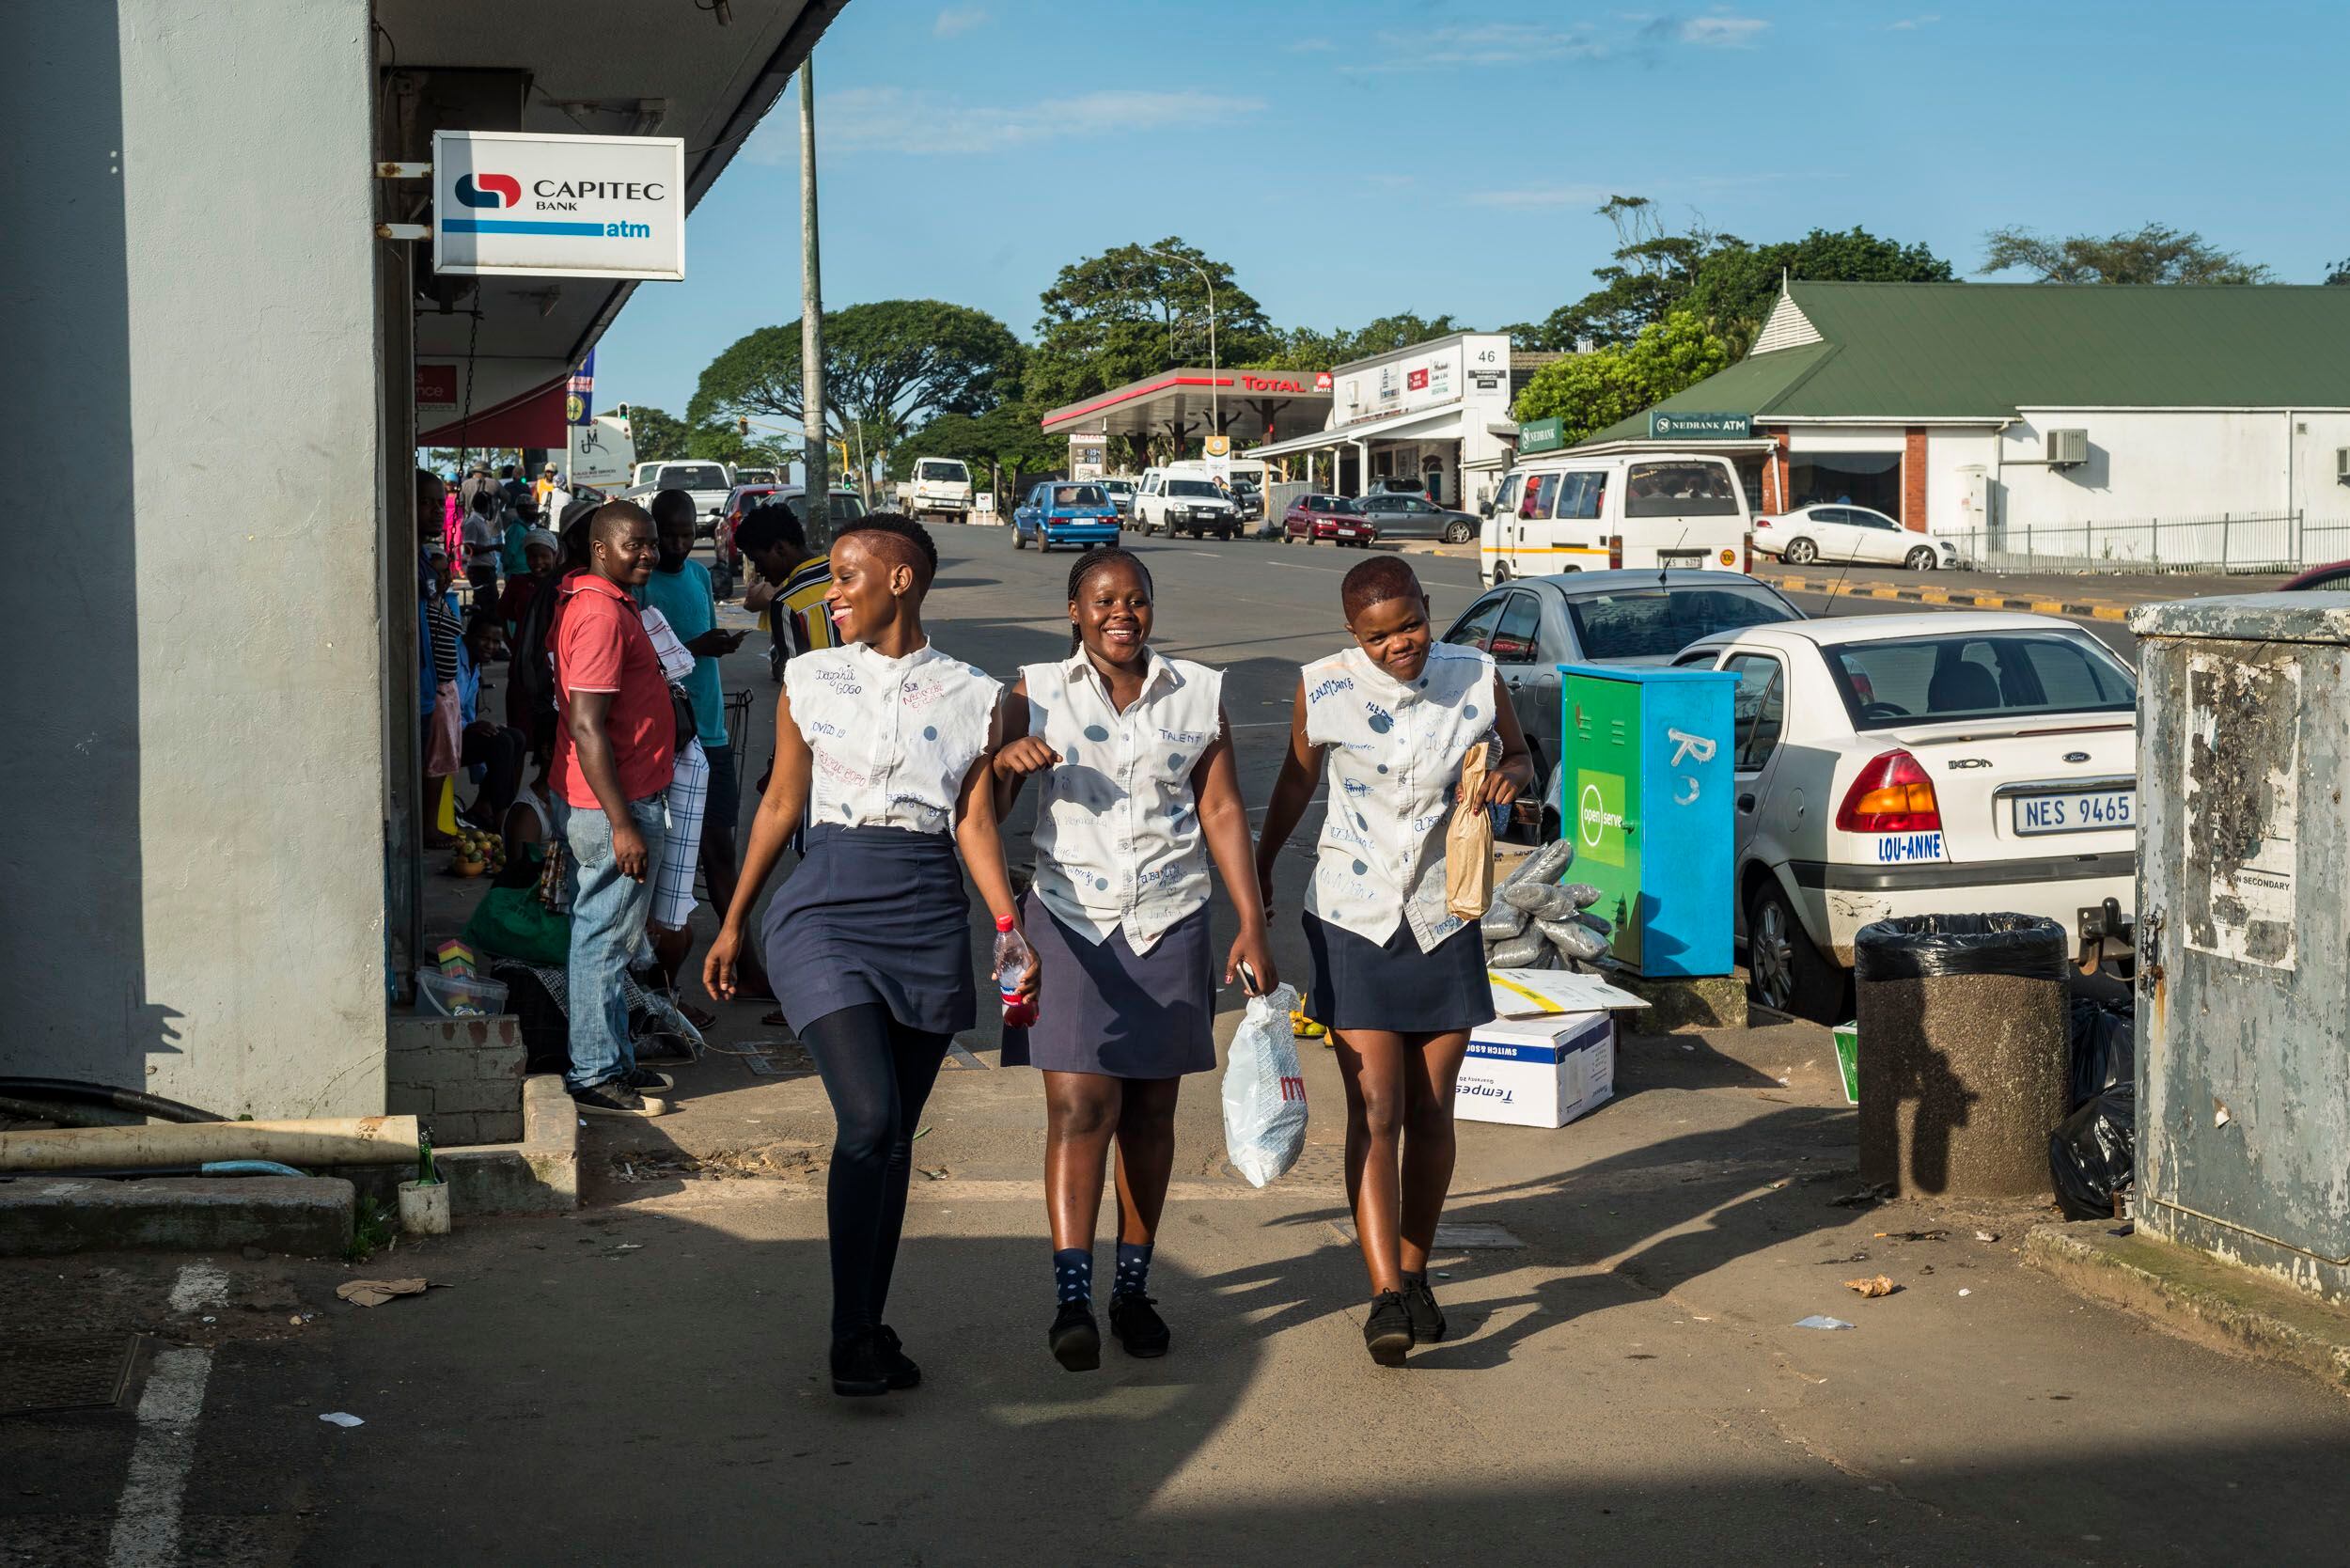 Nocembo, Oratile y Ahmale, compañeras de clase, caminan por la calle principal de Eshowe, en Kwazulu-Natal. Ellas consideran 